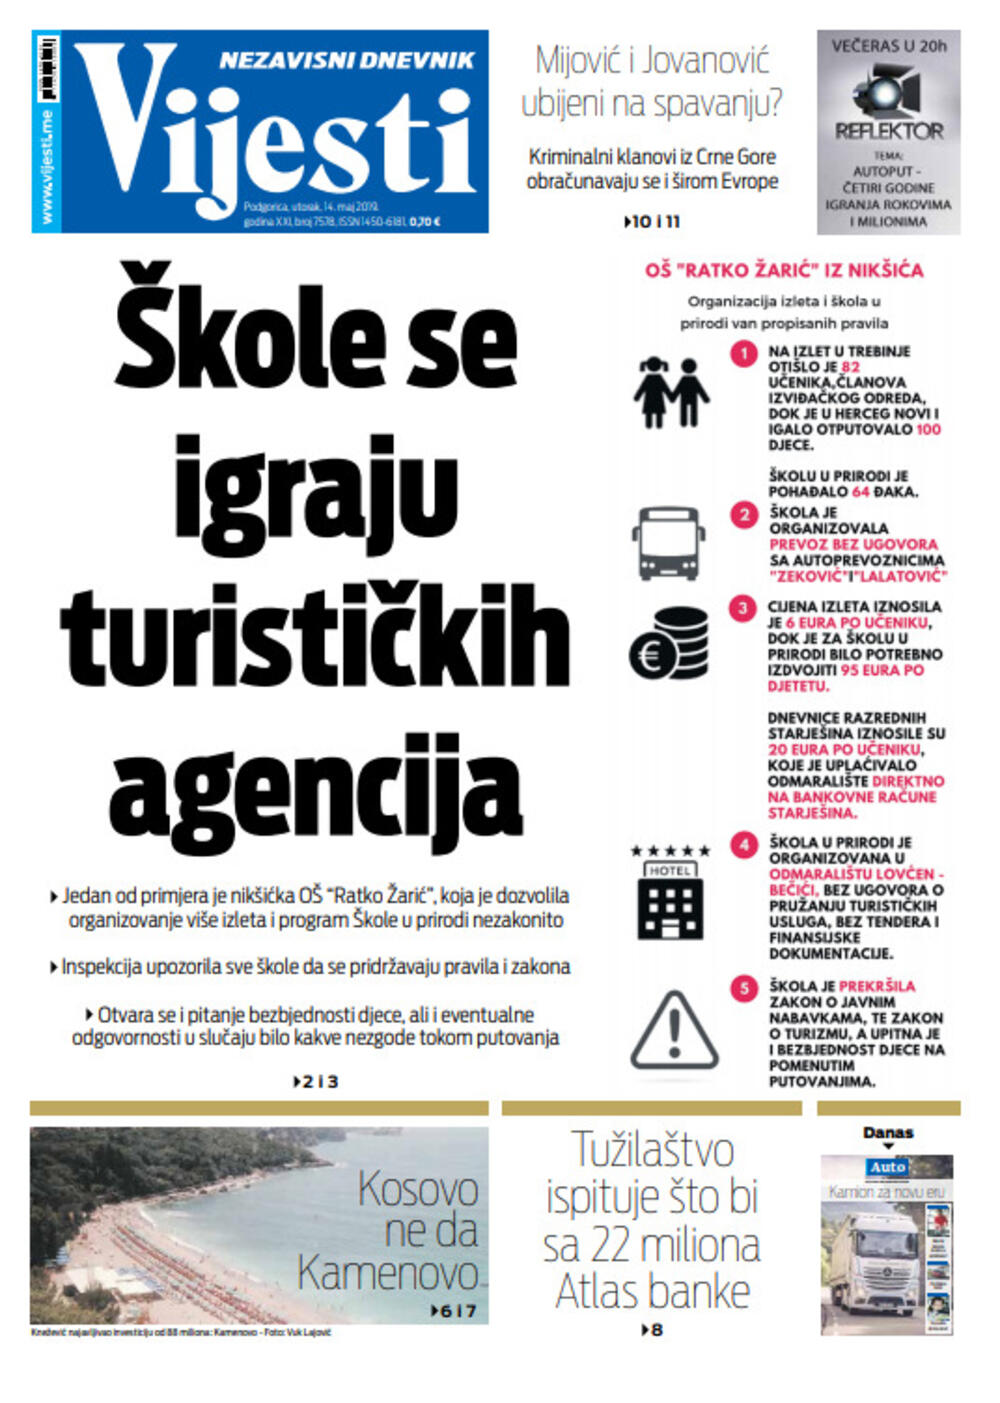 Naslovna strana "Vijesti" za 14. maj, Foto: "Vijesti"